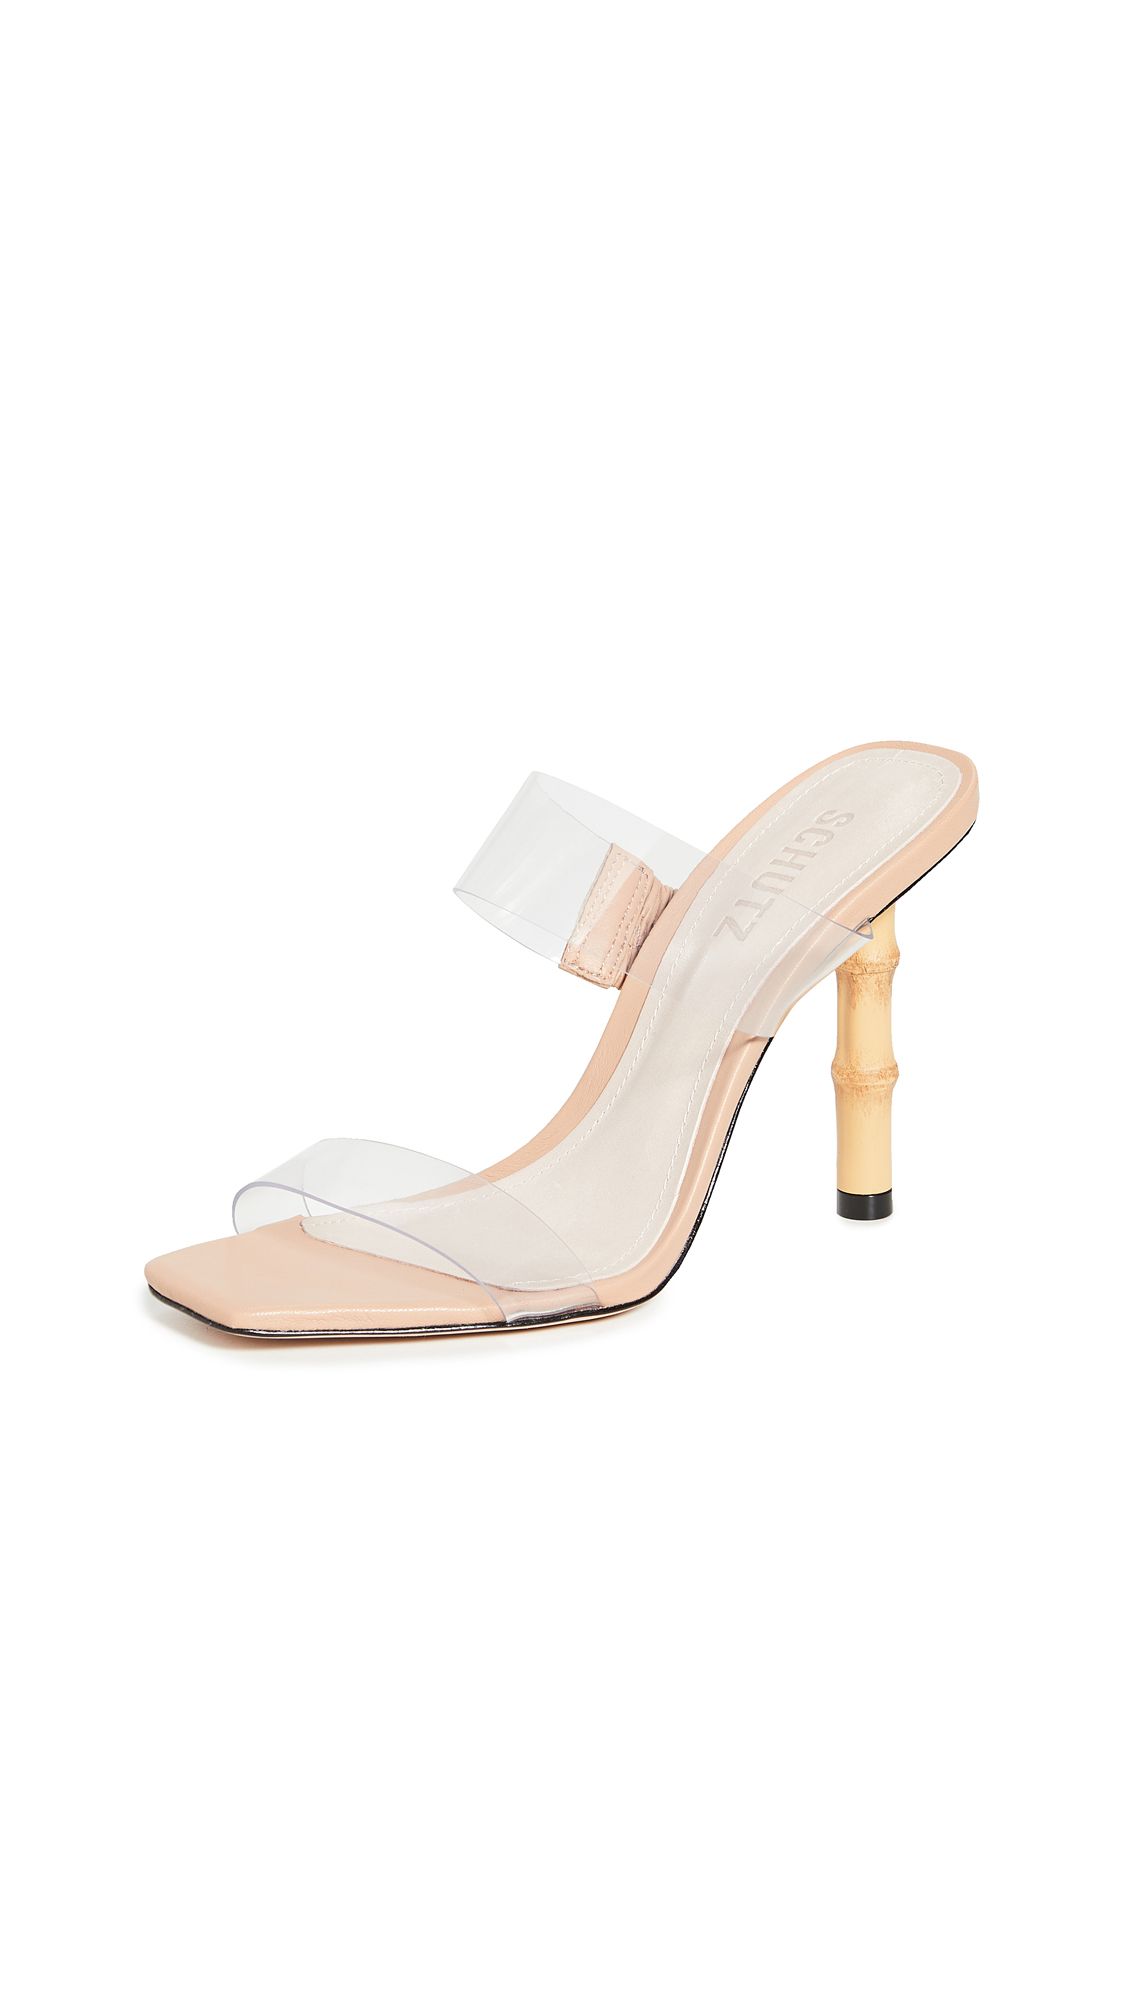 Schutz Colette Sandals | Shopbop